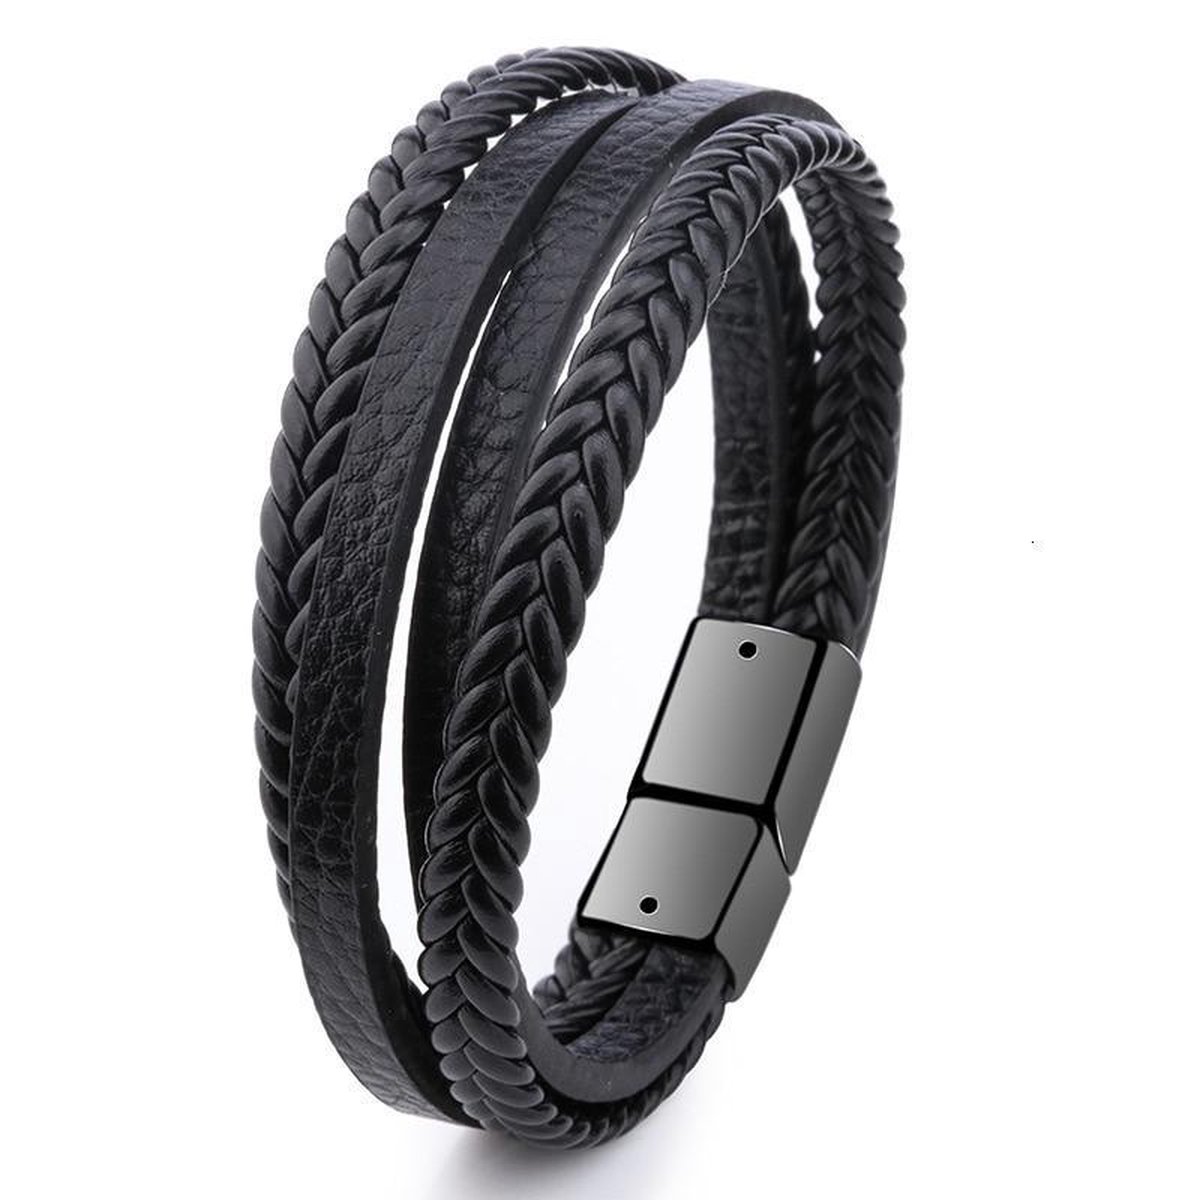 Stoere Heren Armband Leer - Dubbele Vlecht - Zwart met Zwarte Sluiting - Armbanden - Cadeau voor Man - Merkloos